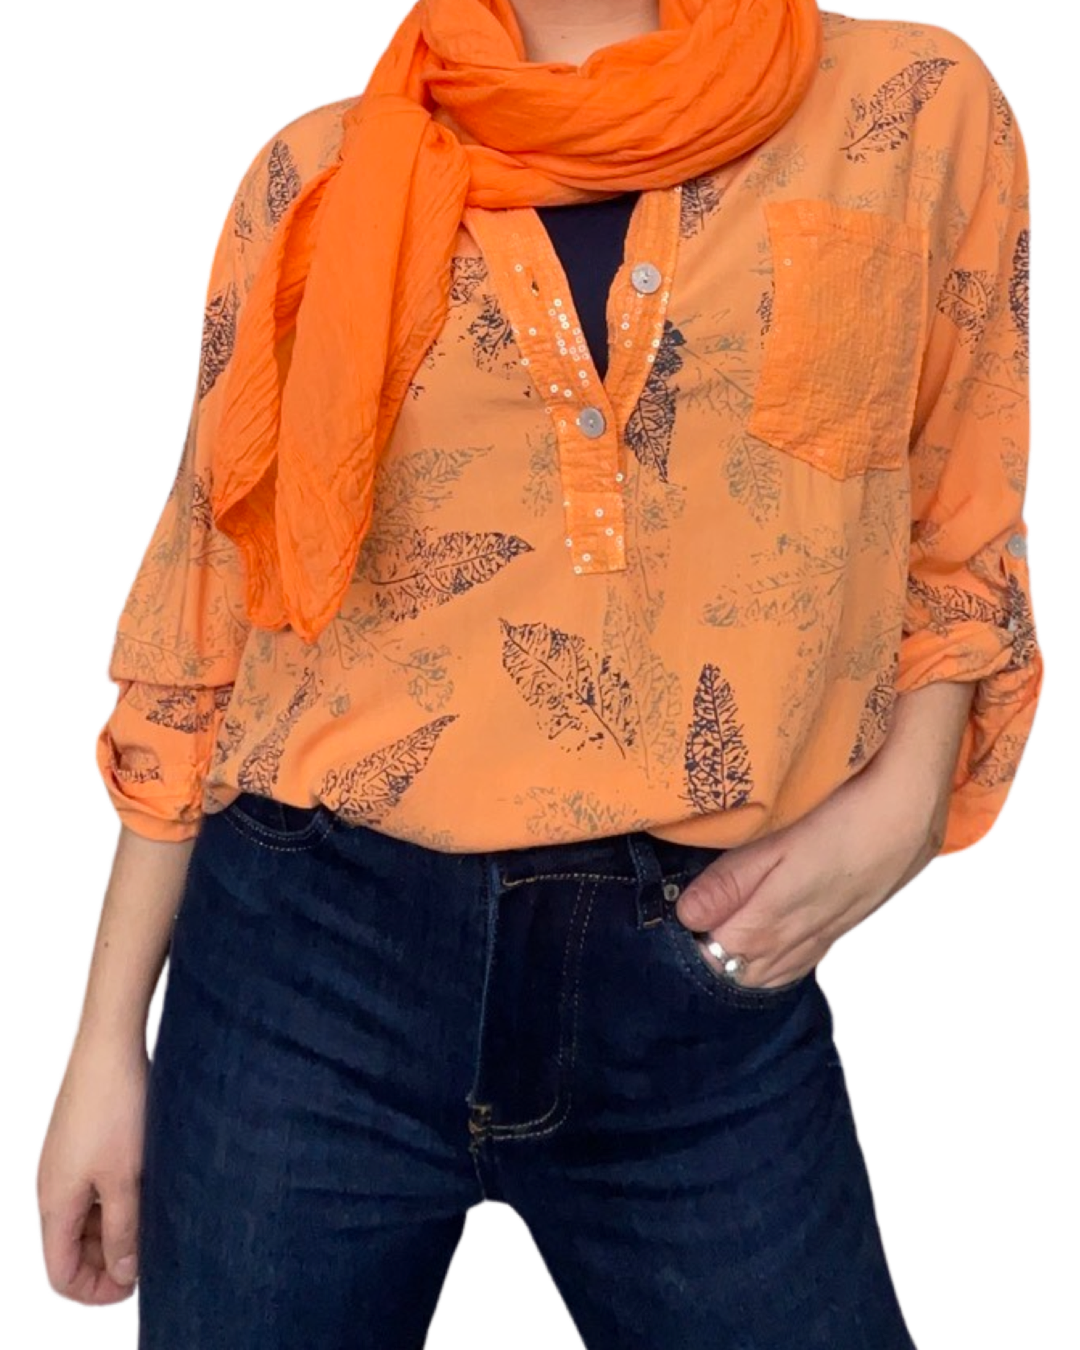 Blouse orange pour femme avec imprimé à manche 3/4 avec foulard orange et camisole à l'intérieur.